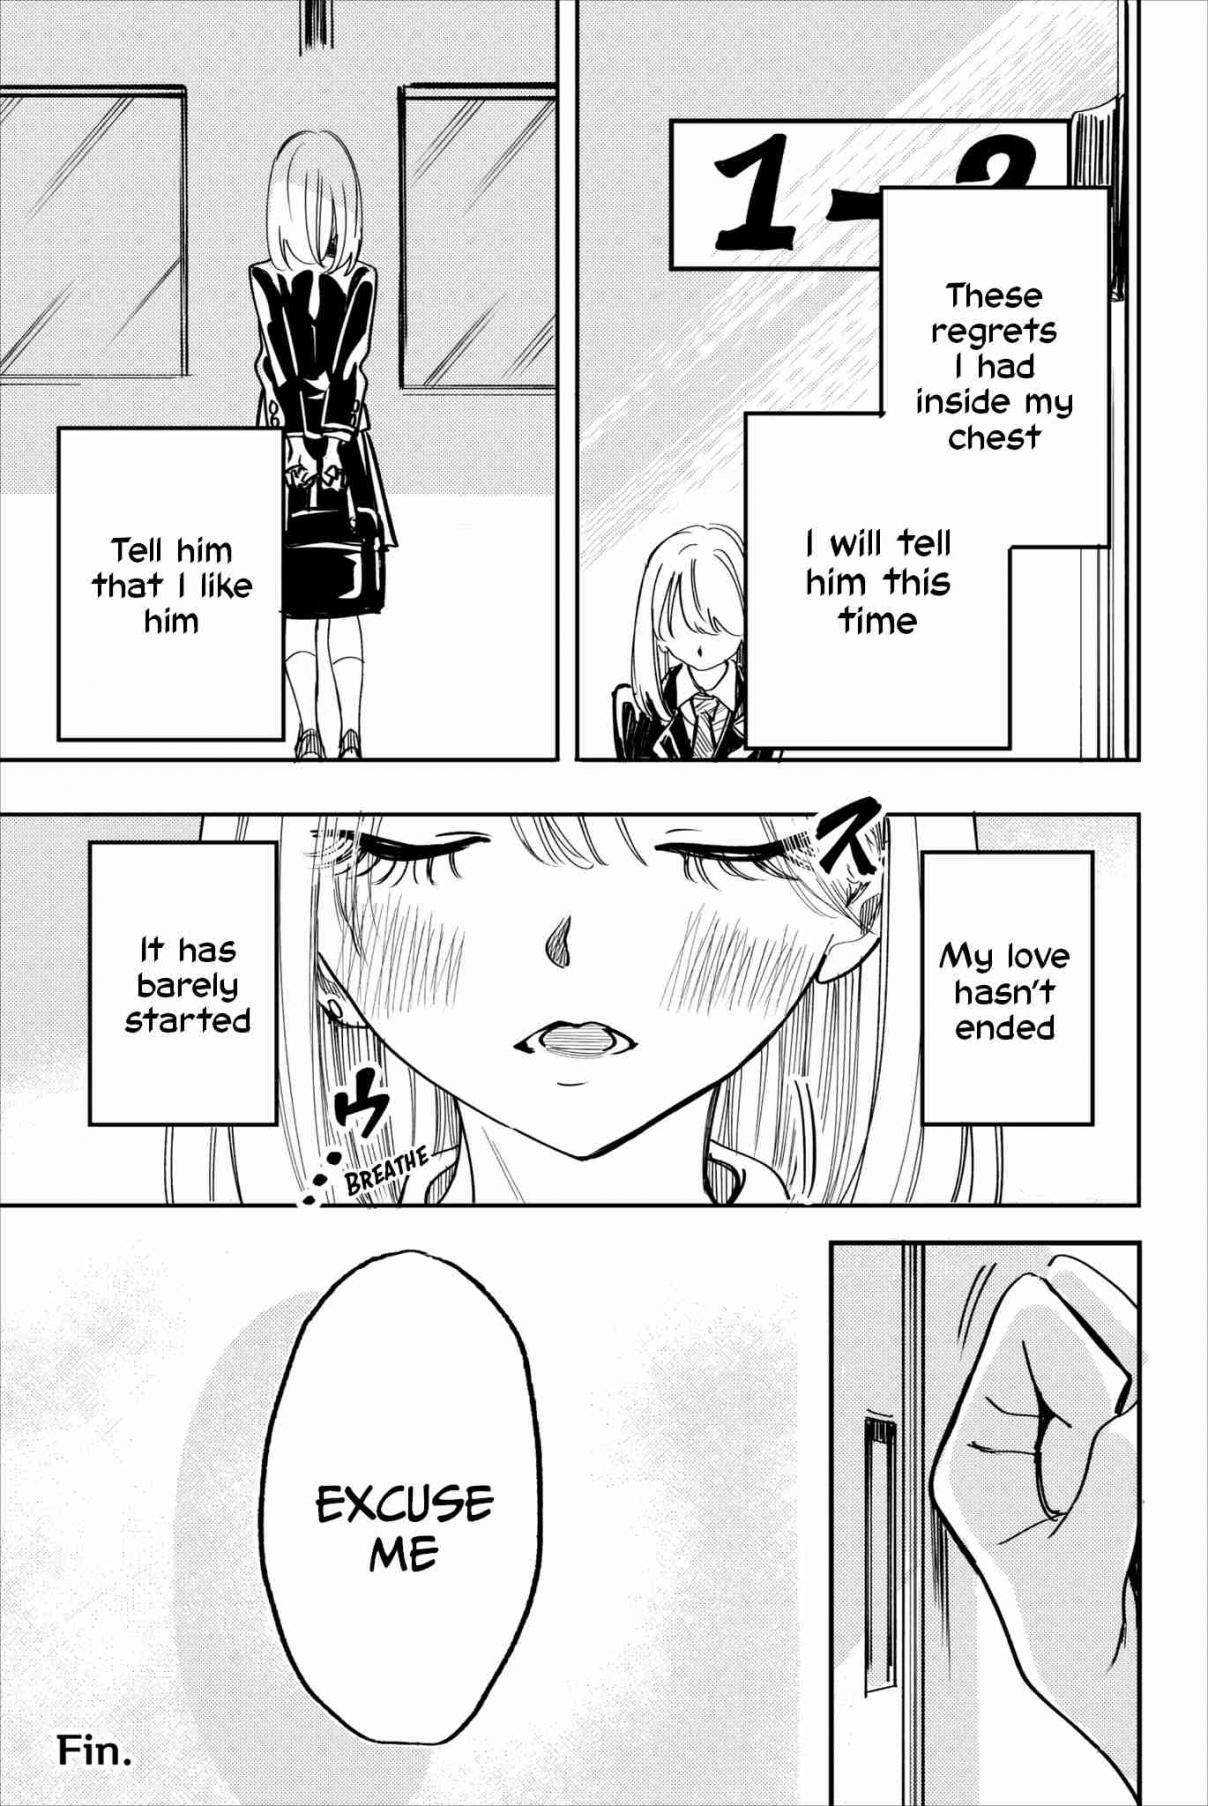 Koitsu, Ore no Koto Suki Nanoka?! Vol. 2 Ch. 25 Final Chapter Nishino san keeps her feelings